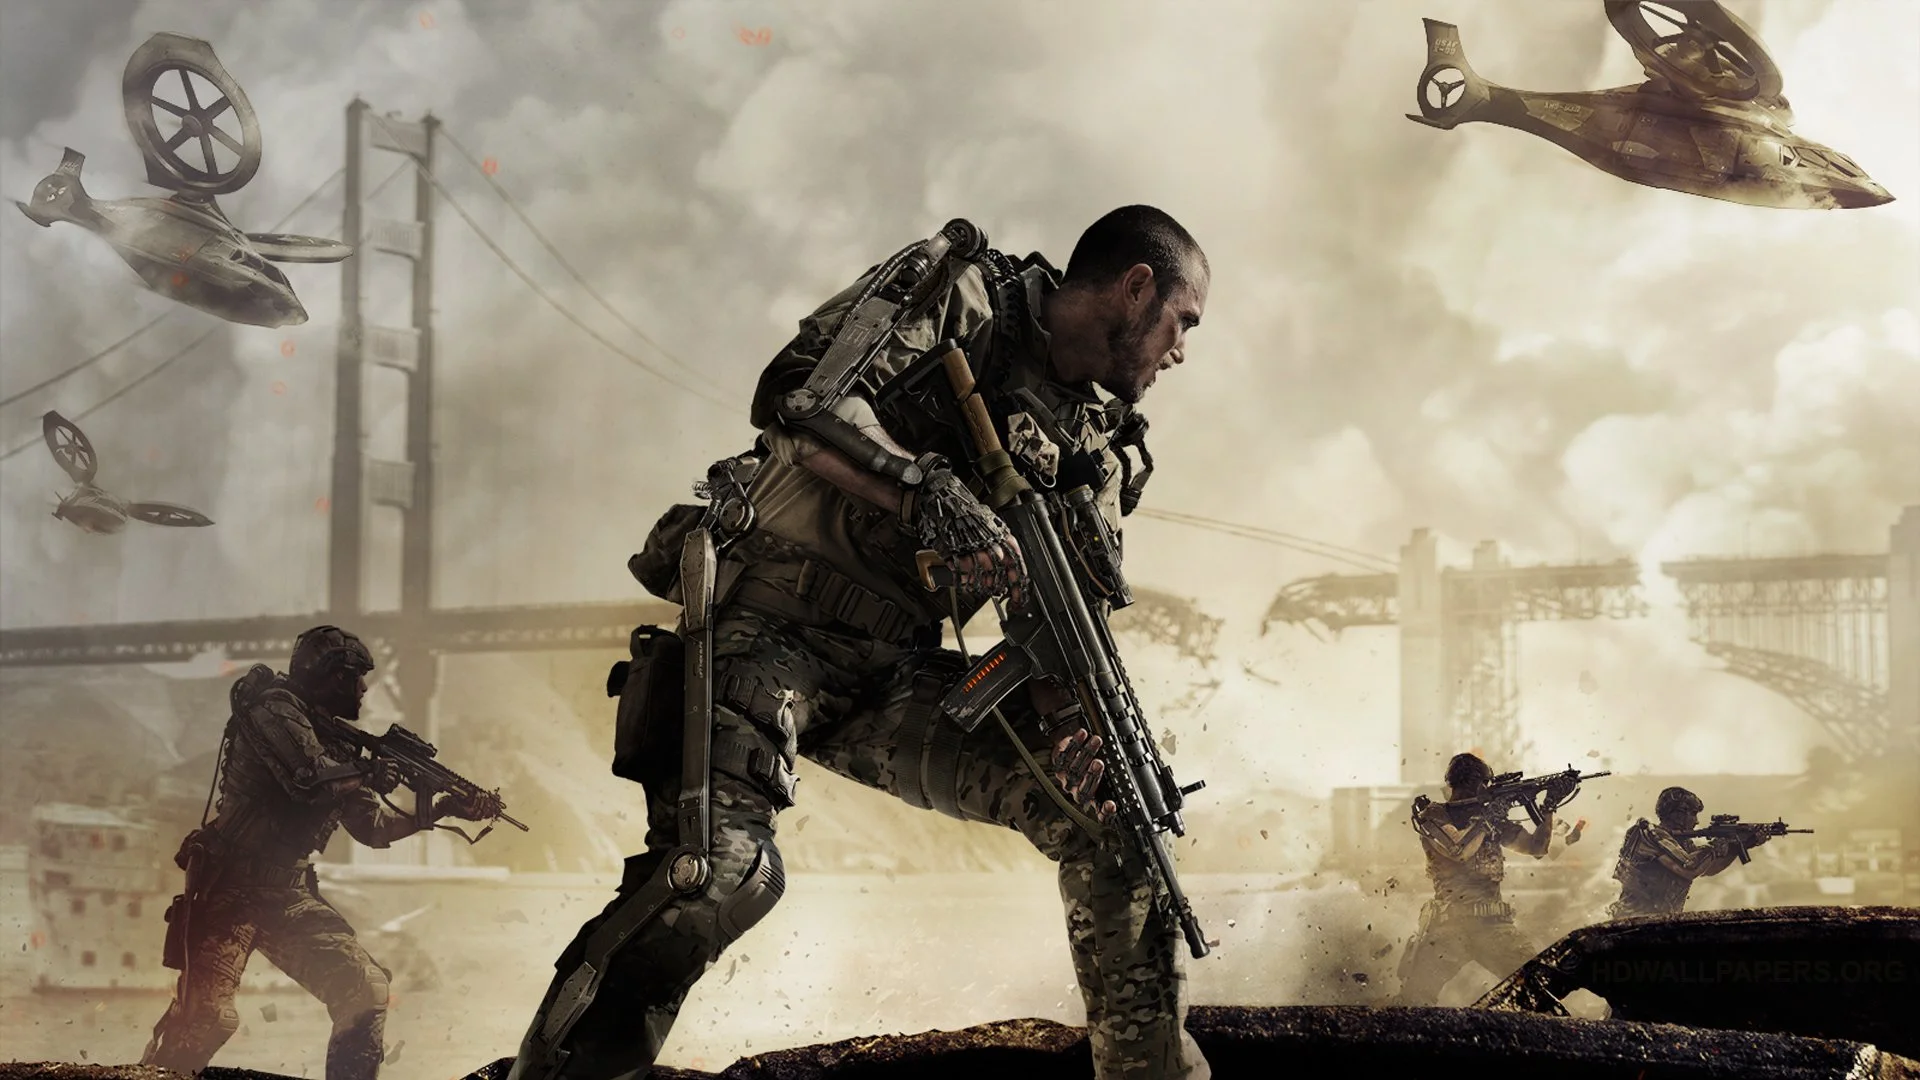 4 ноября выходит Call of Duty: Advanced Warfare, самый «попсовый» шутер года. Рыночные эксперты напряглись: удастся ли Advanced Warfare преодолеть планку в миллиард долларов или нет — главный вопрос сезона. Ну и, конечно, все хотят увидеть актерскую работу Кевина Спейси в роли главного злодея. В этом материале — ключевые особенности игры, от успешной реализации которой будет зависеть ее коммерческий успех и отношение аудитории. 